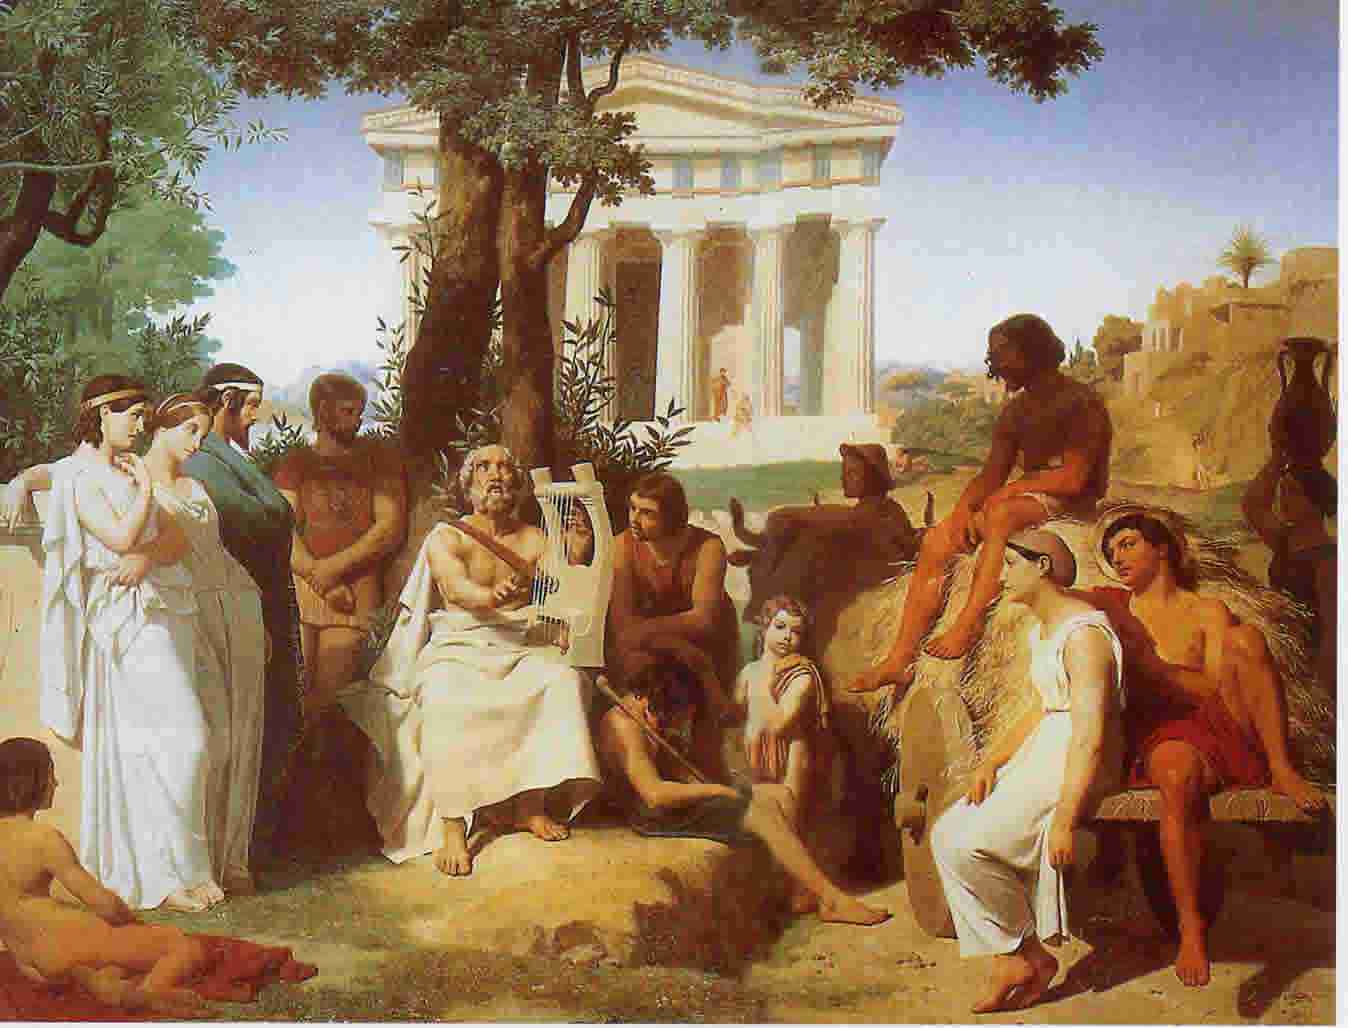 古罗马兴衰时间过程(4179字，一文搞清楚古希腊的兴起和衰亡)